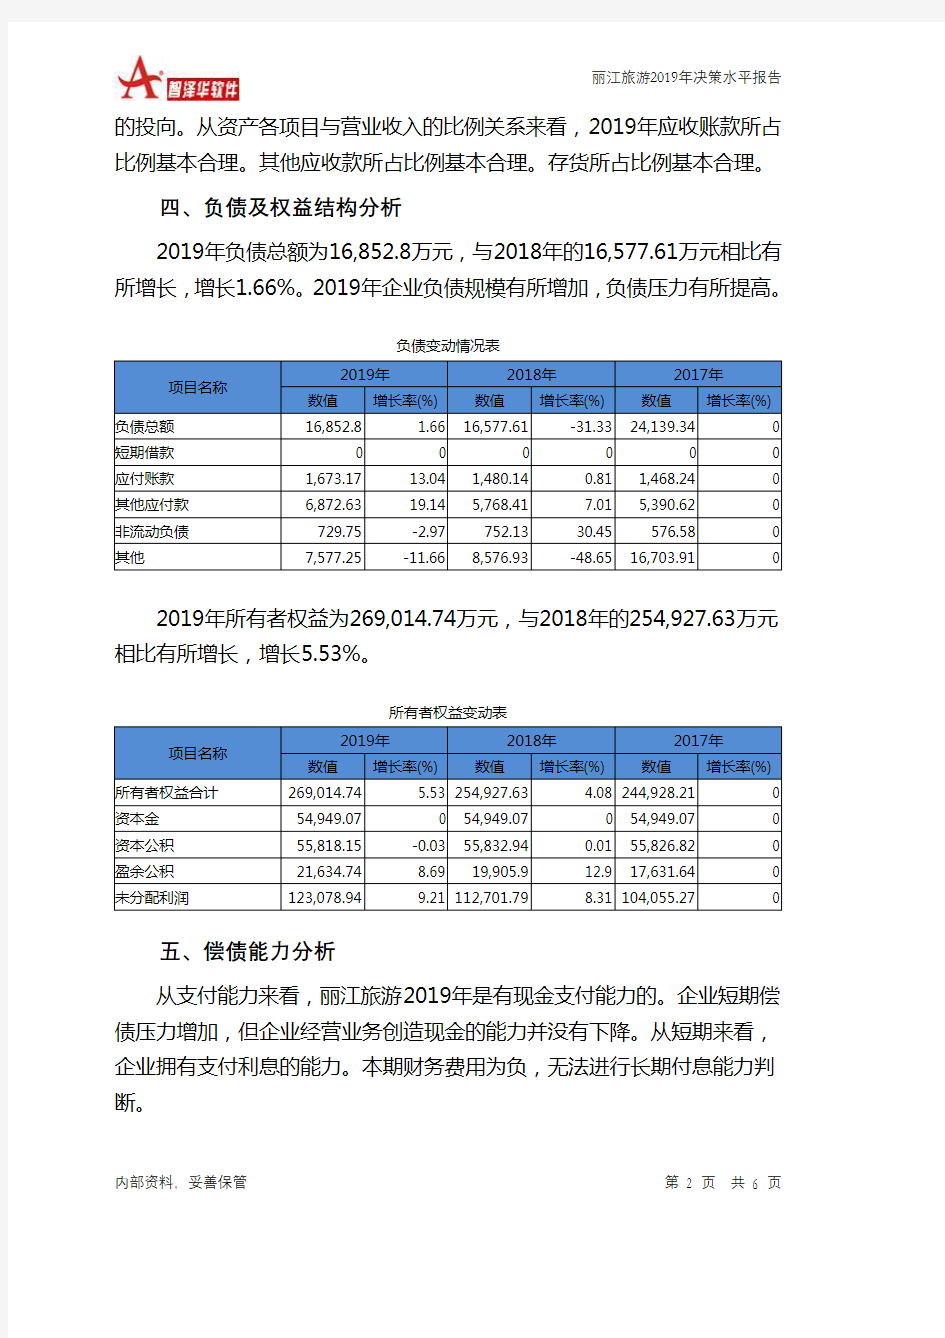 丽江旅游2019年决策水平分析报告